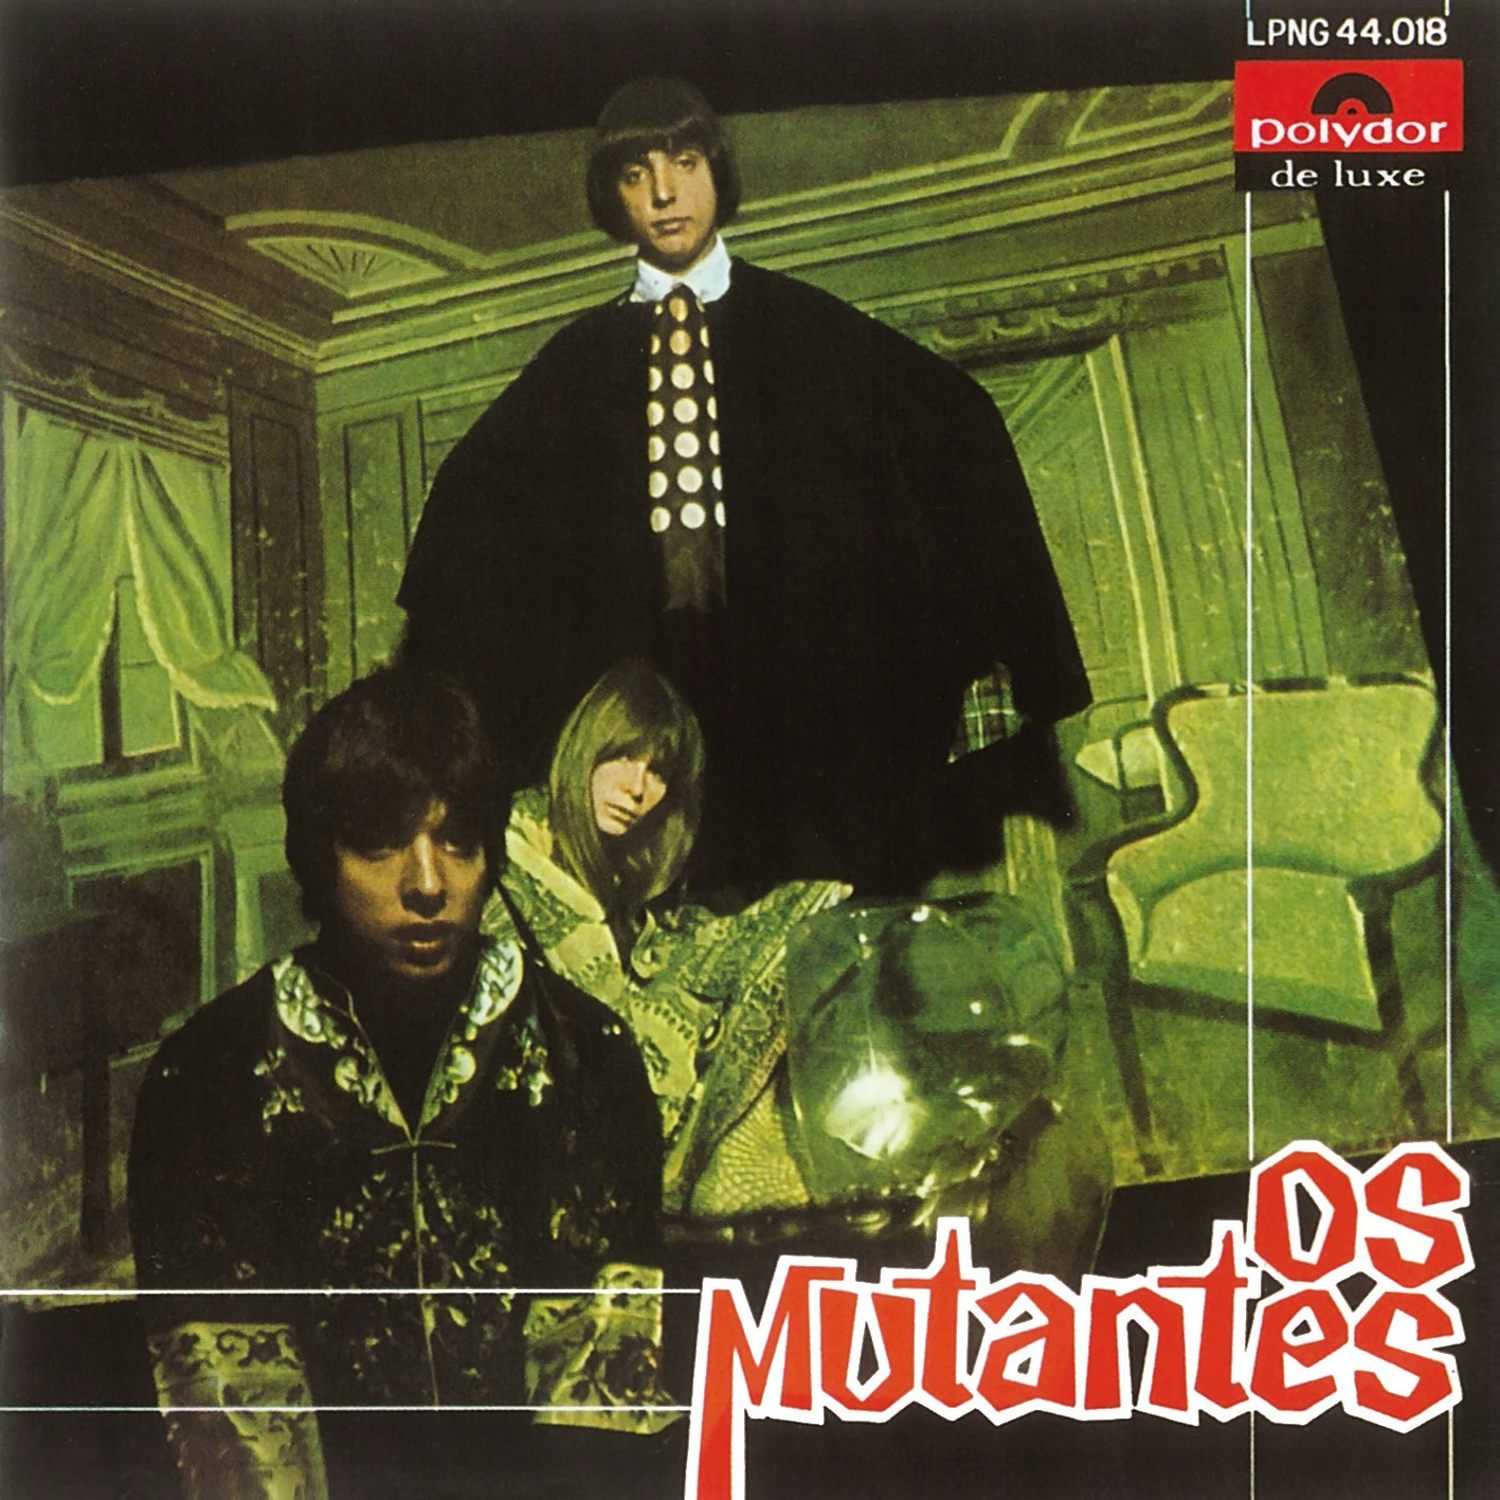 Album artwork for Album artwork for Os Mutantes by Os Mutantes by Os Mutantes - Os Mutantes